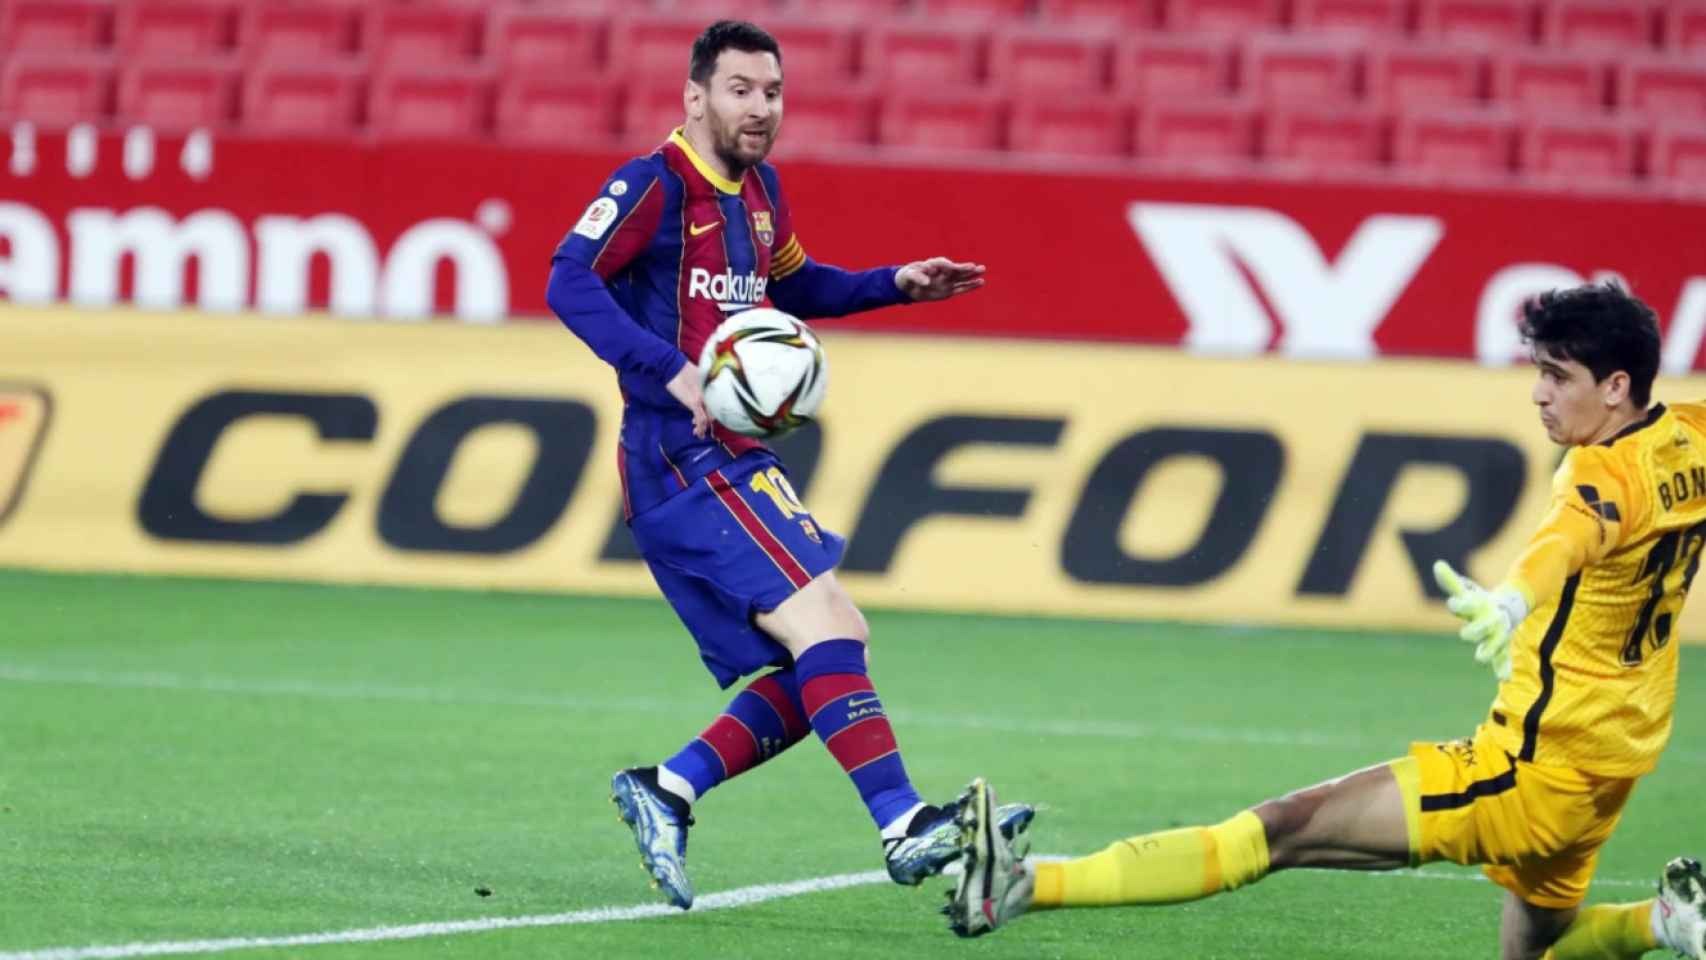 Leo Messi en una acción contra Bono / FC Barcelona